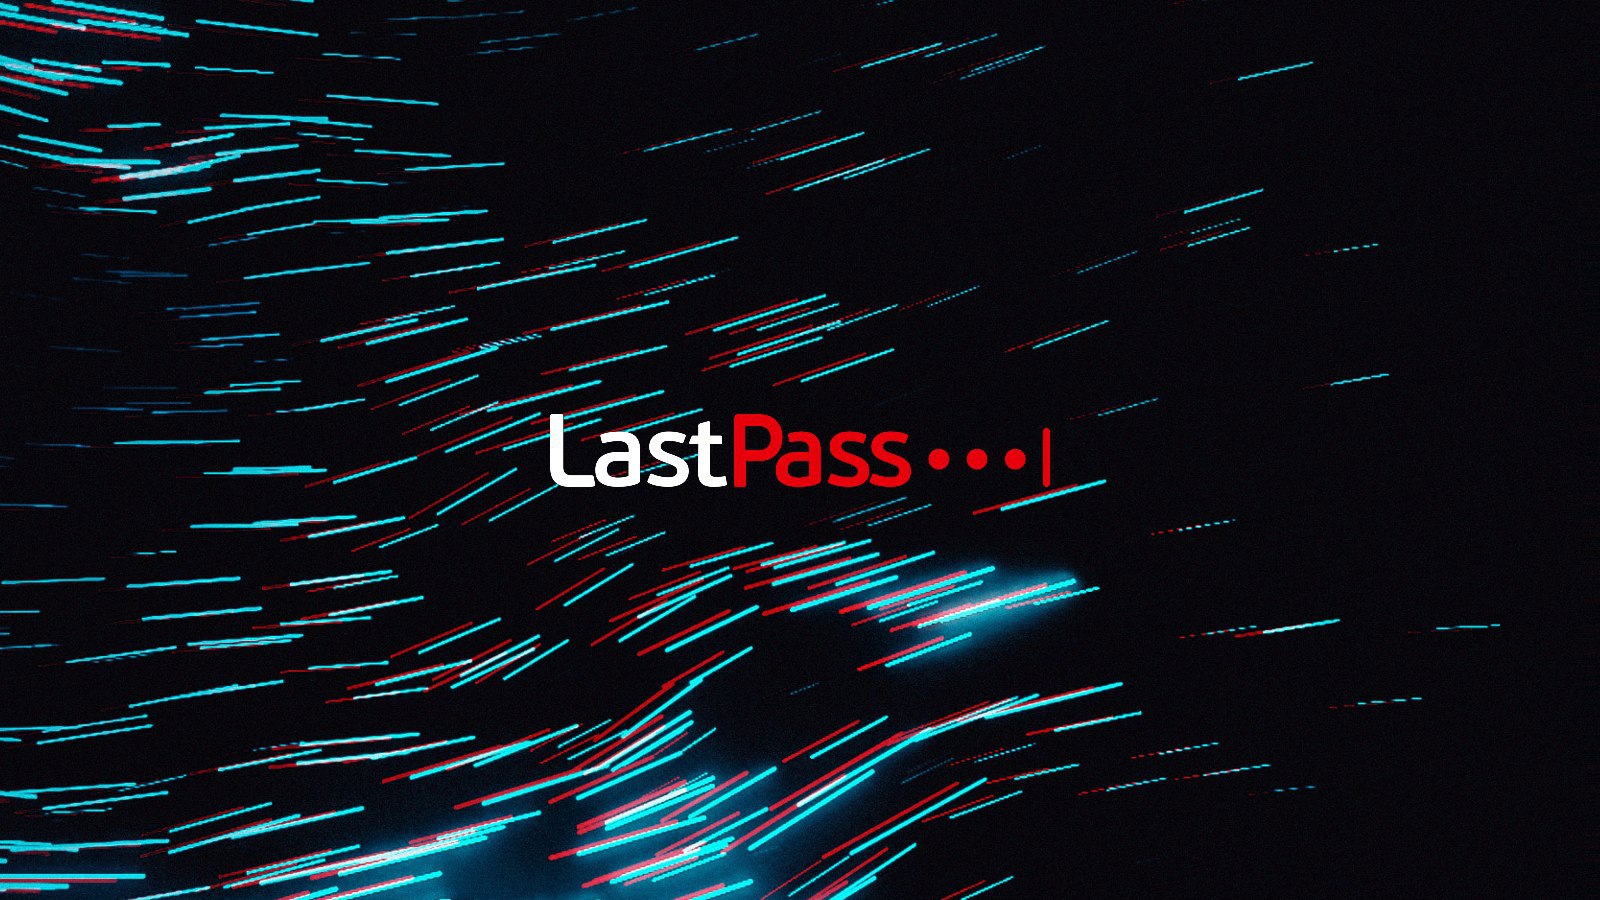 LastPass опять взломали. Компания утверждает, что хакеры имели доступ к его системам в течение четырех дней в августе, но нет никаких доказательств того, что данные клиентов или зашифрованные хранилища паролей были взломаны. Понимаете, признаков нет, но об